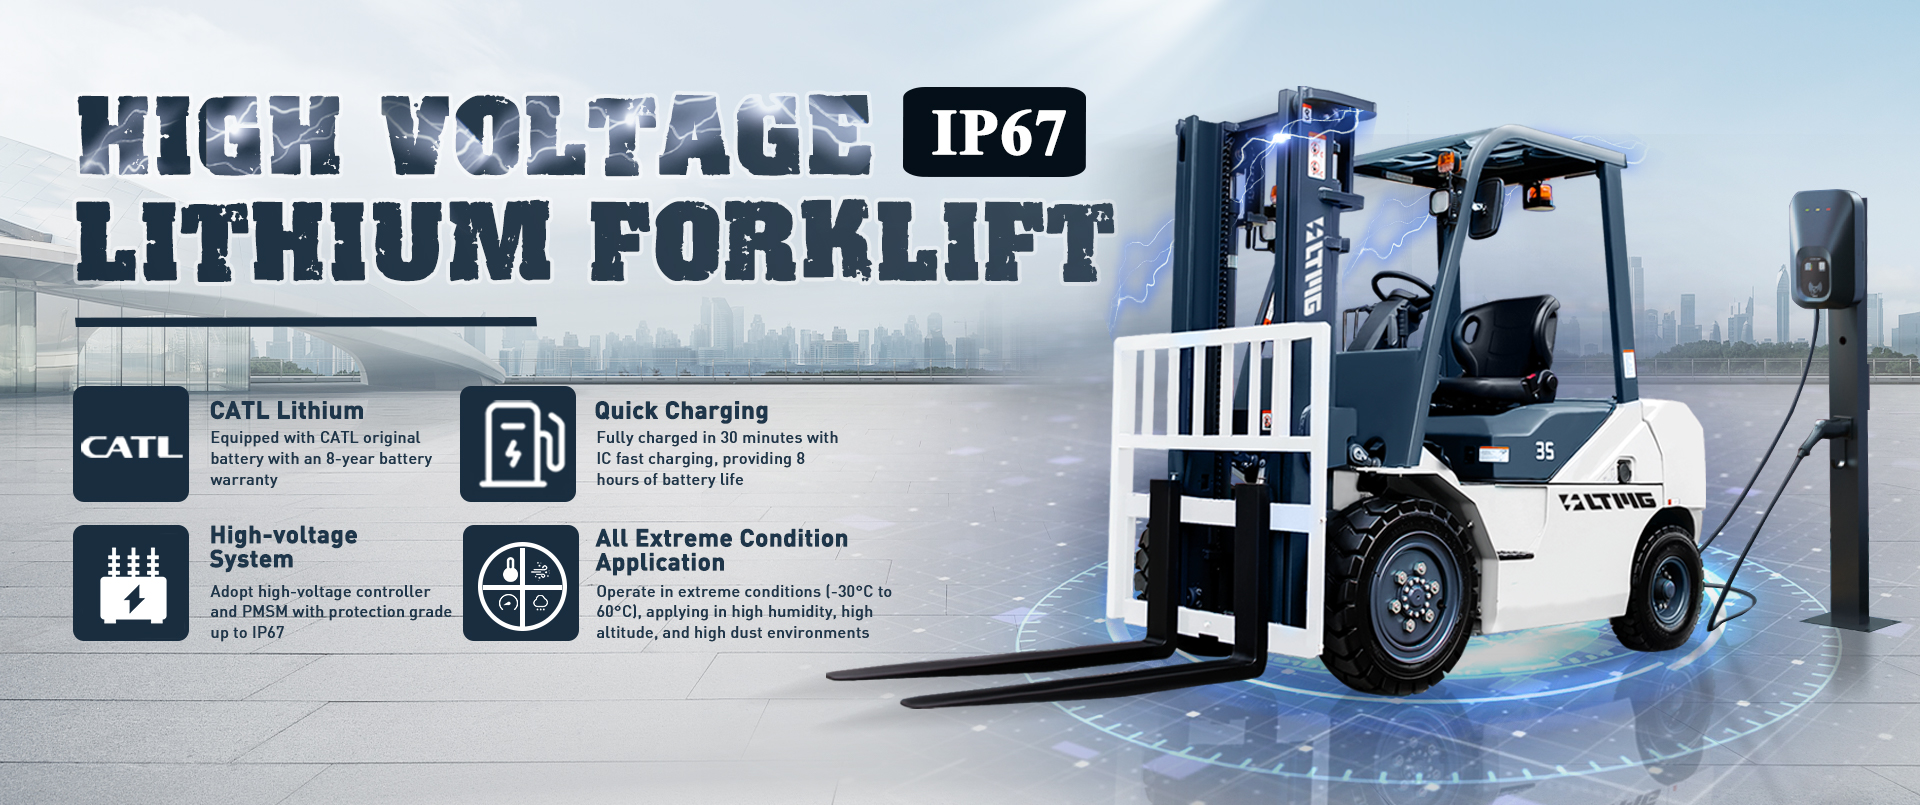 High Voltage Lithium Forklift